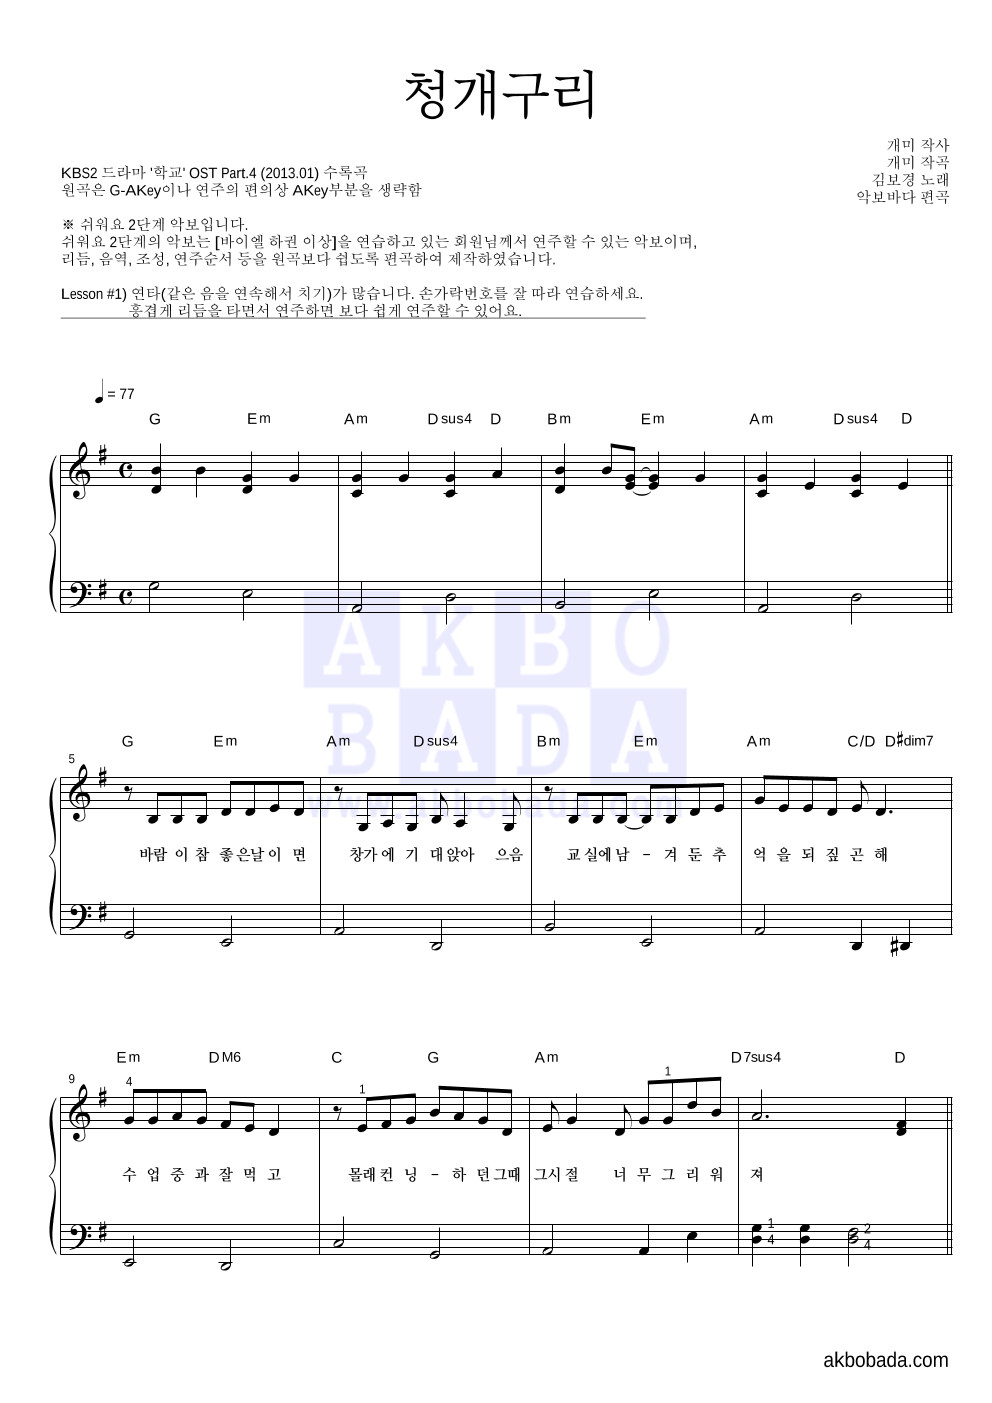 김보경 - 청개구리 피아노2단-쉬워요 악보 